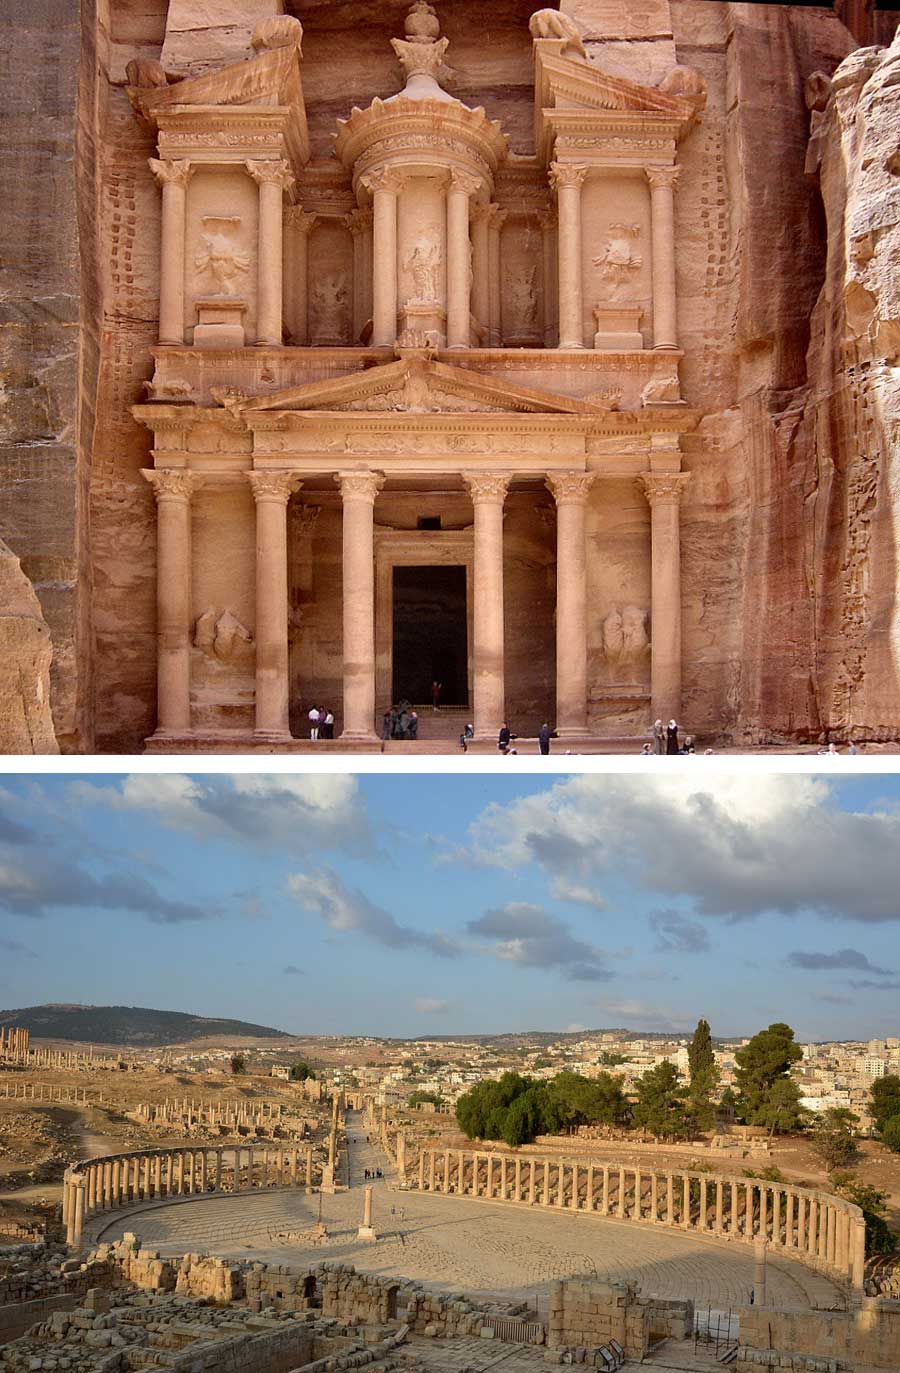 Fakta: Petra og Jerash er de mest berømte turistattraktioner i Jordan.